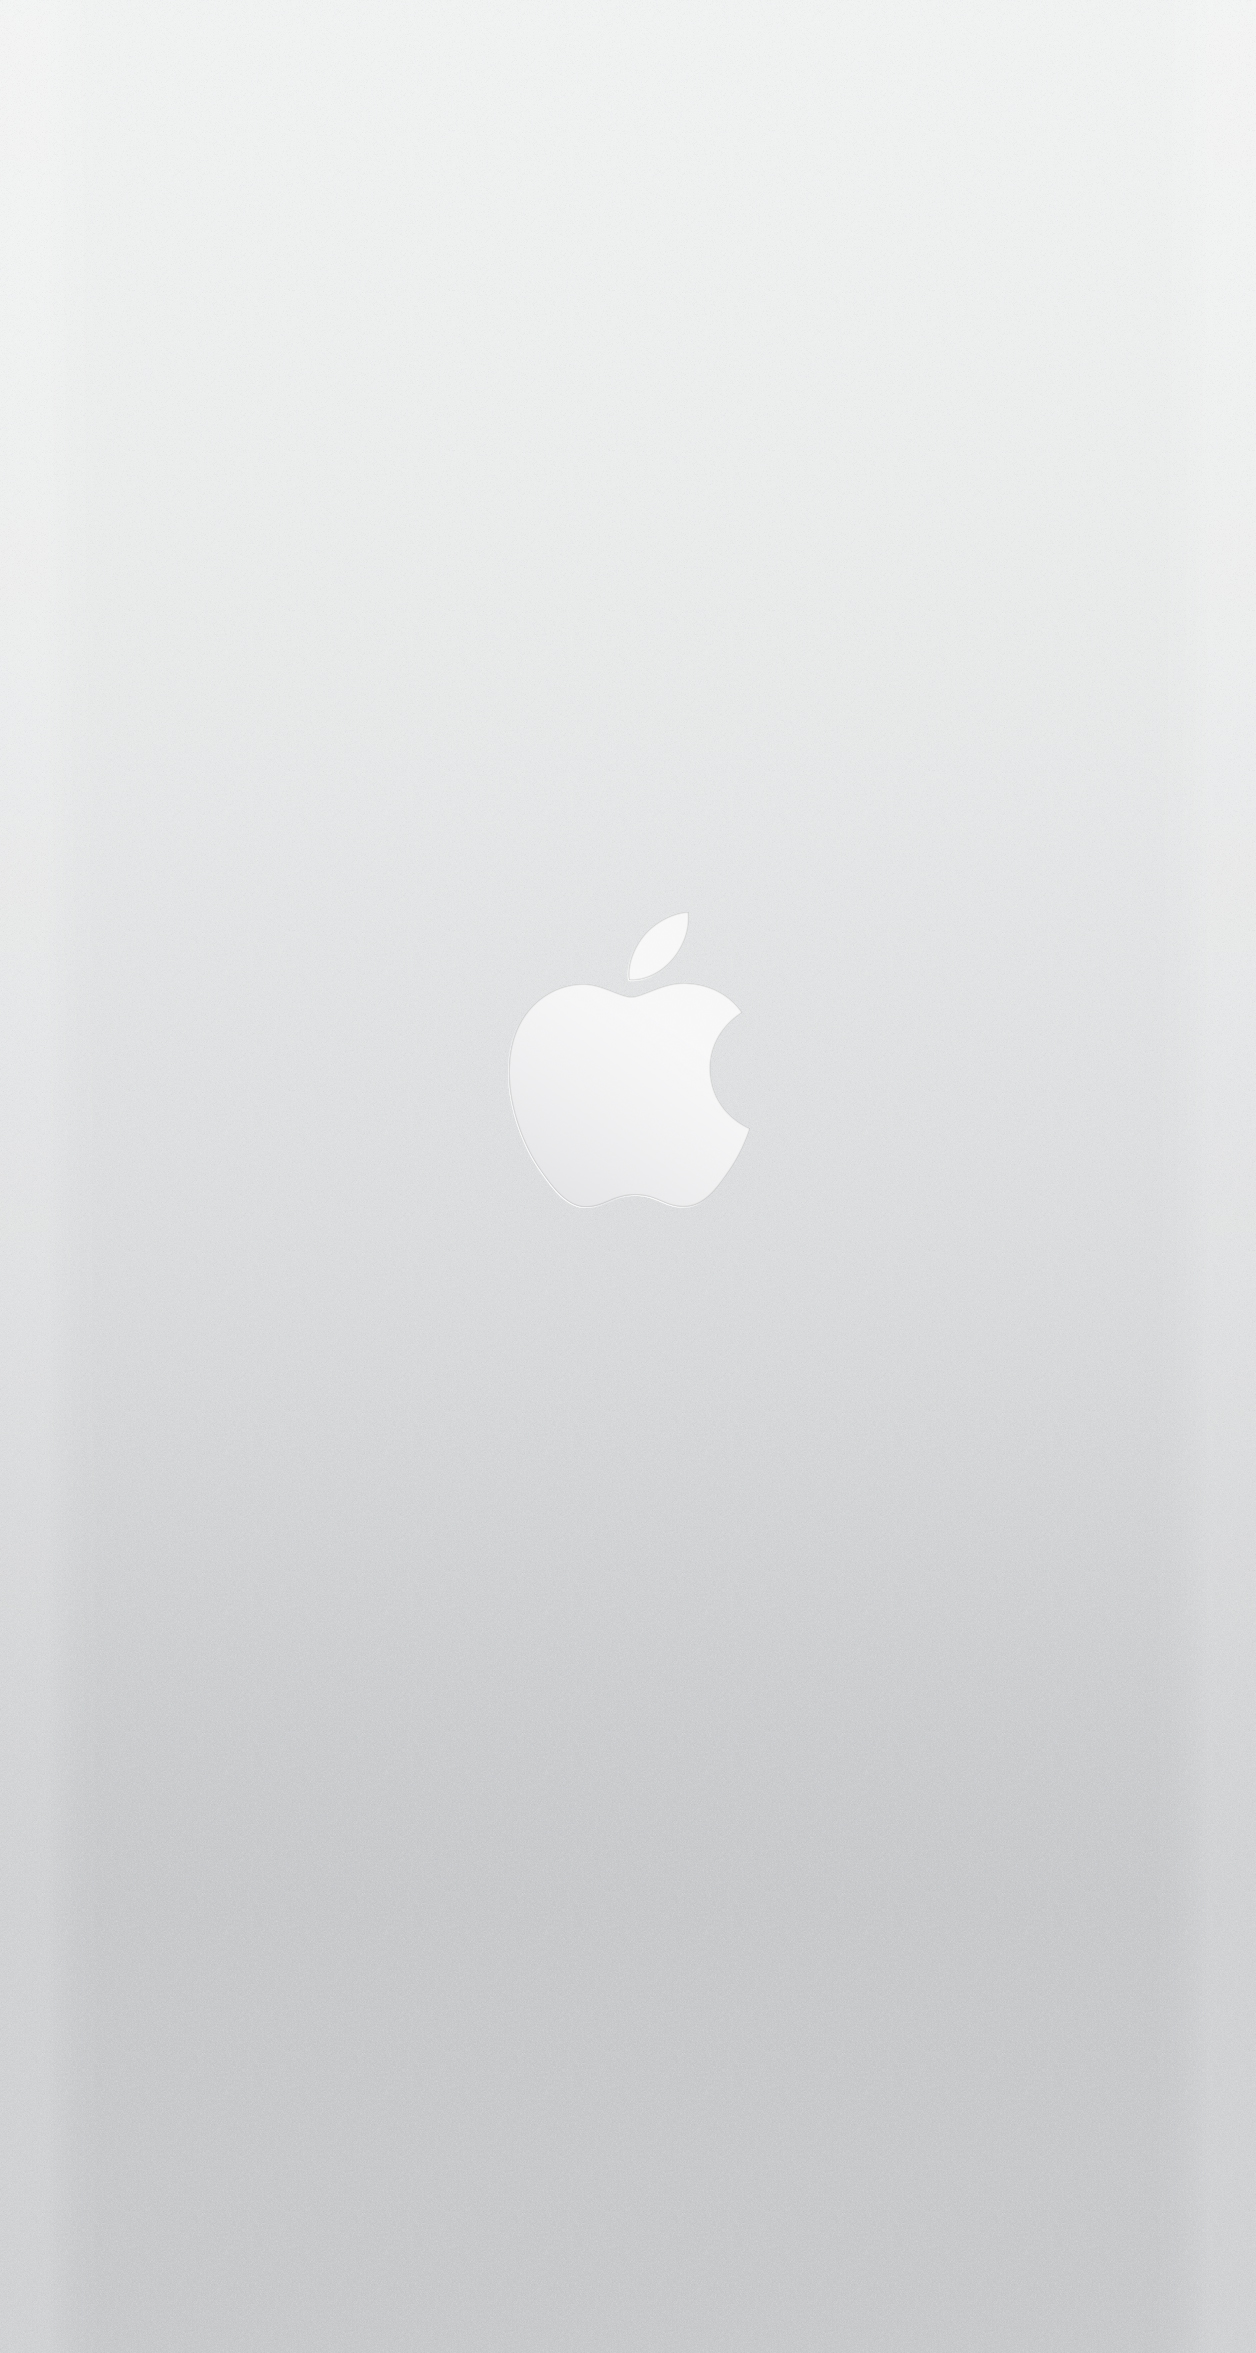 wallpapers parallax Apple aux couleurs de liPhone 6 pour les iPhone